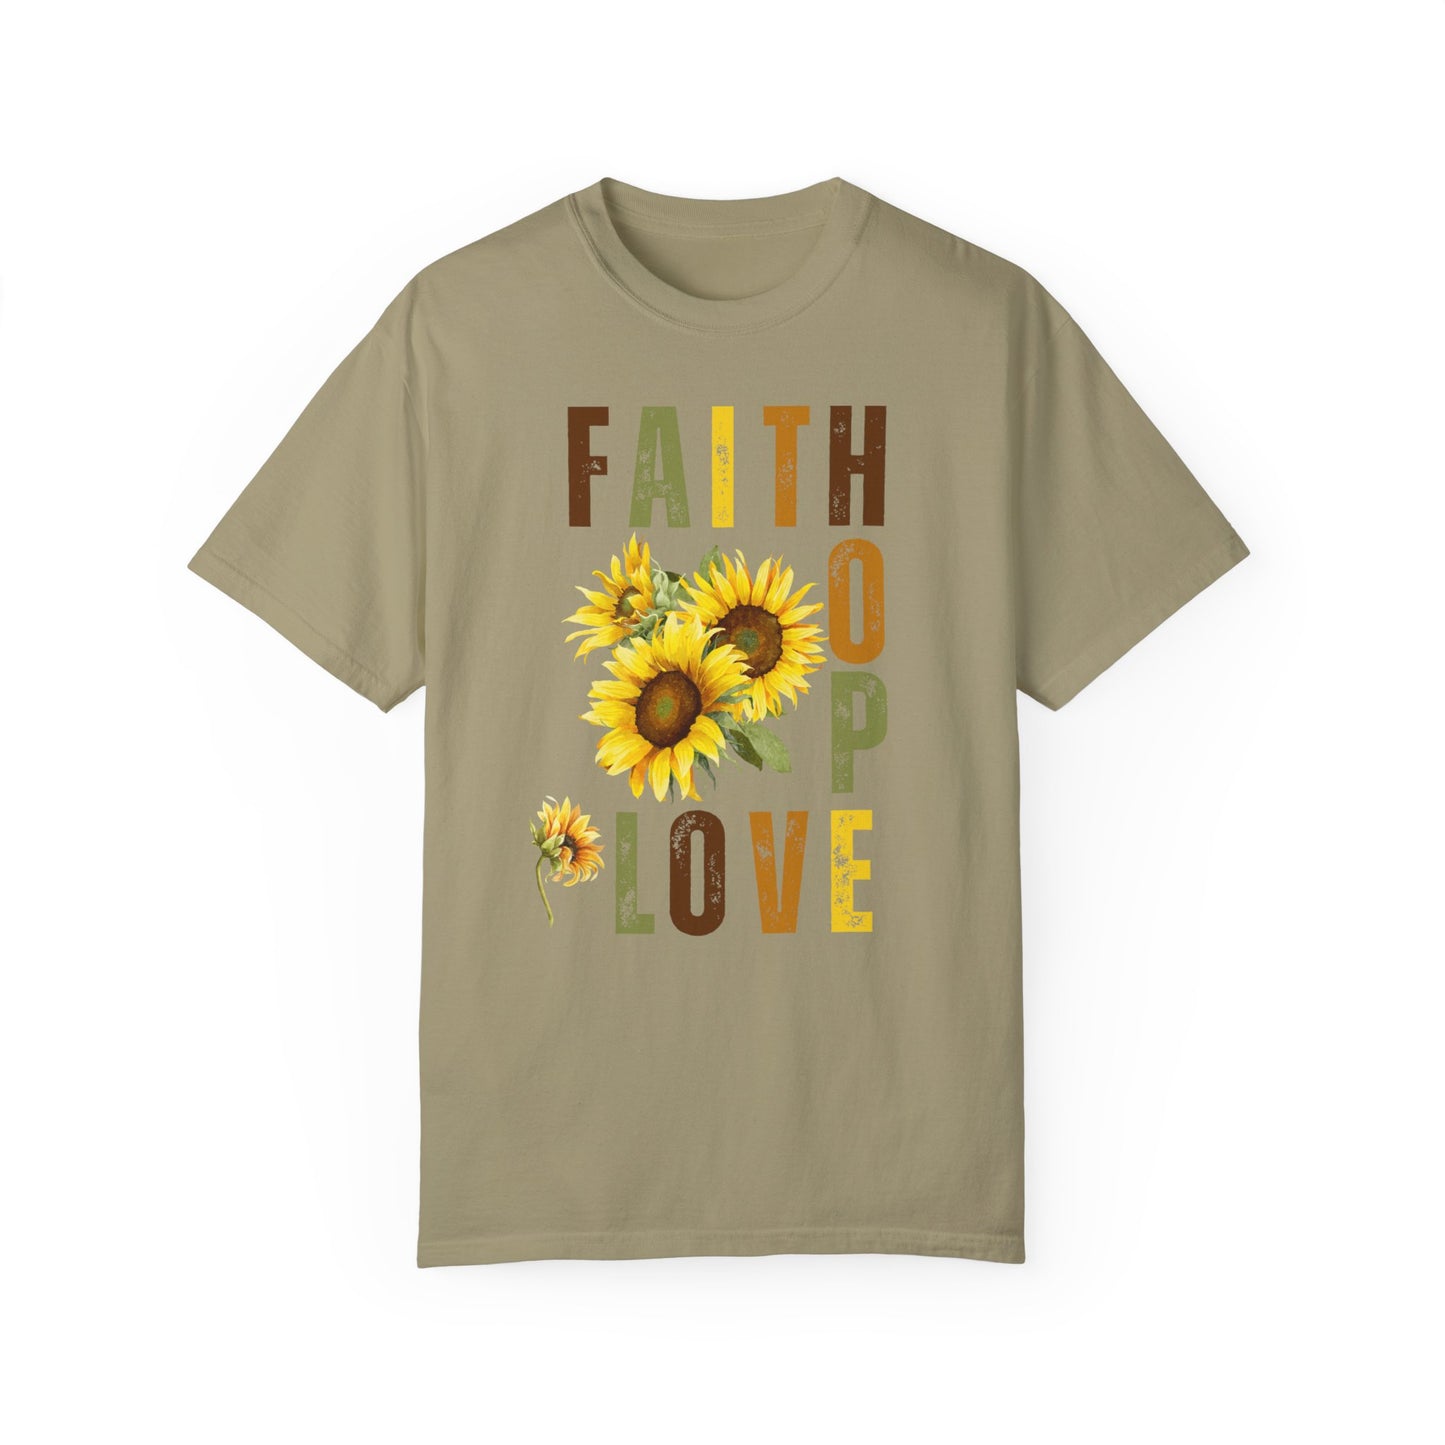 Faith Hope Love Sunflower T-shirt, Inspirational Tshirt, Faith Hope Love Shirt, Gifts For Her, Gifts For Women, Sunflower Shirt, Floral Tee